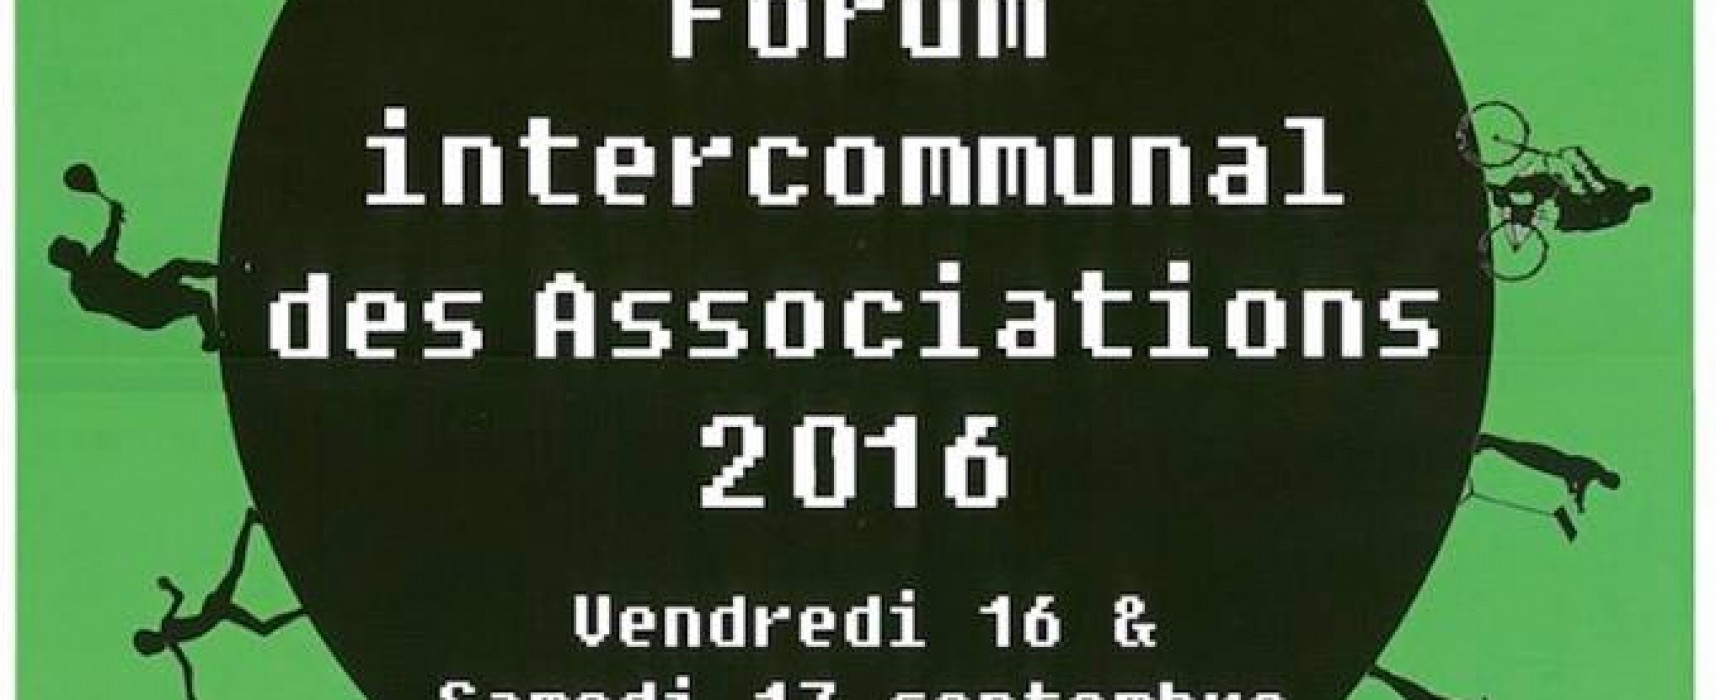 Forum intercommunal des associations : faites le plein d’activités !